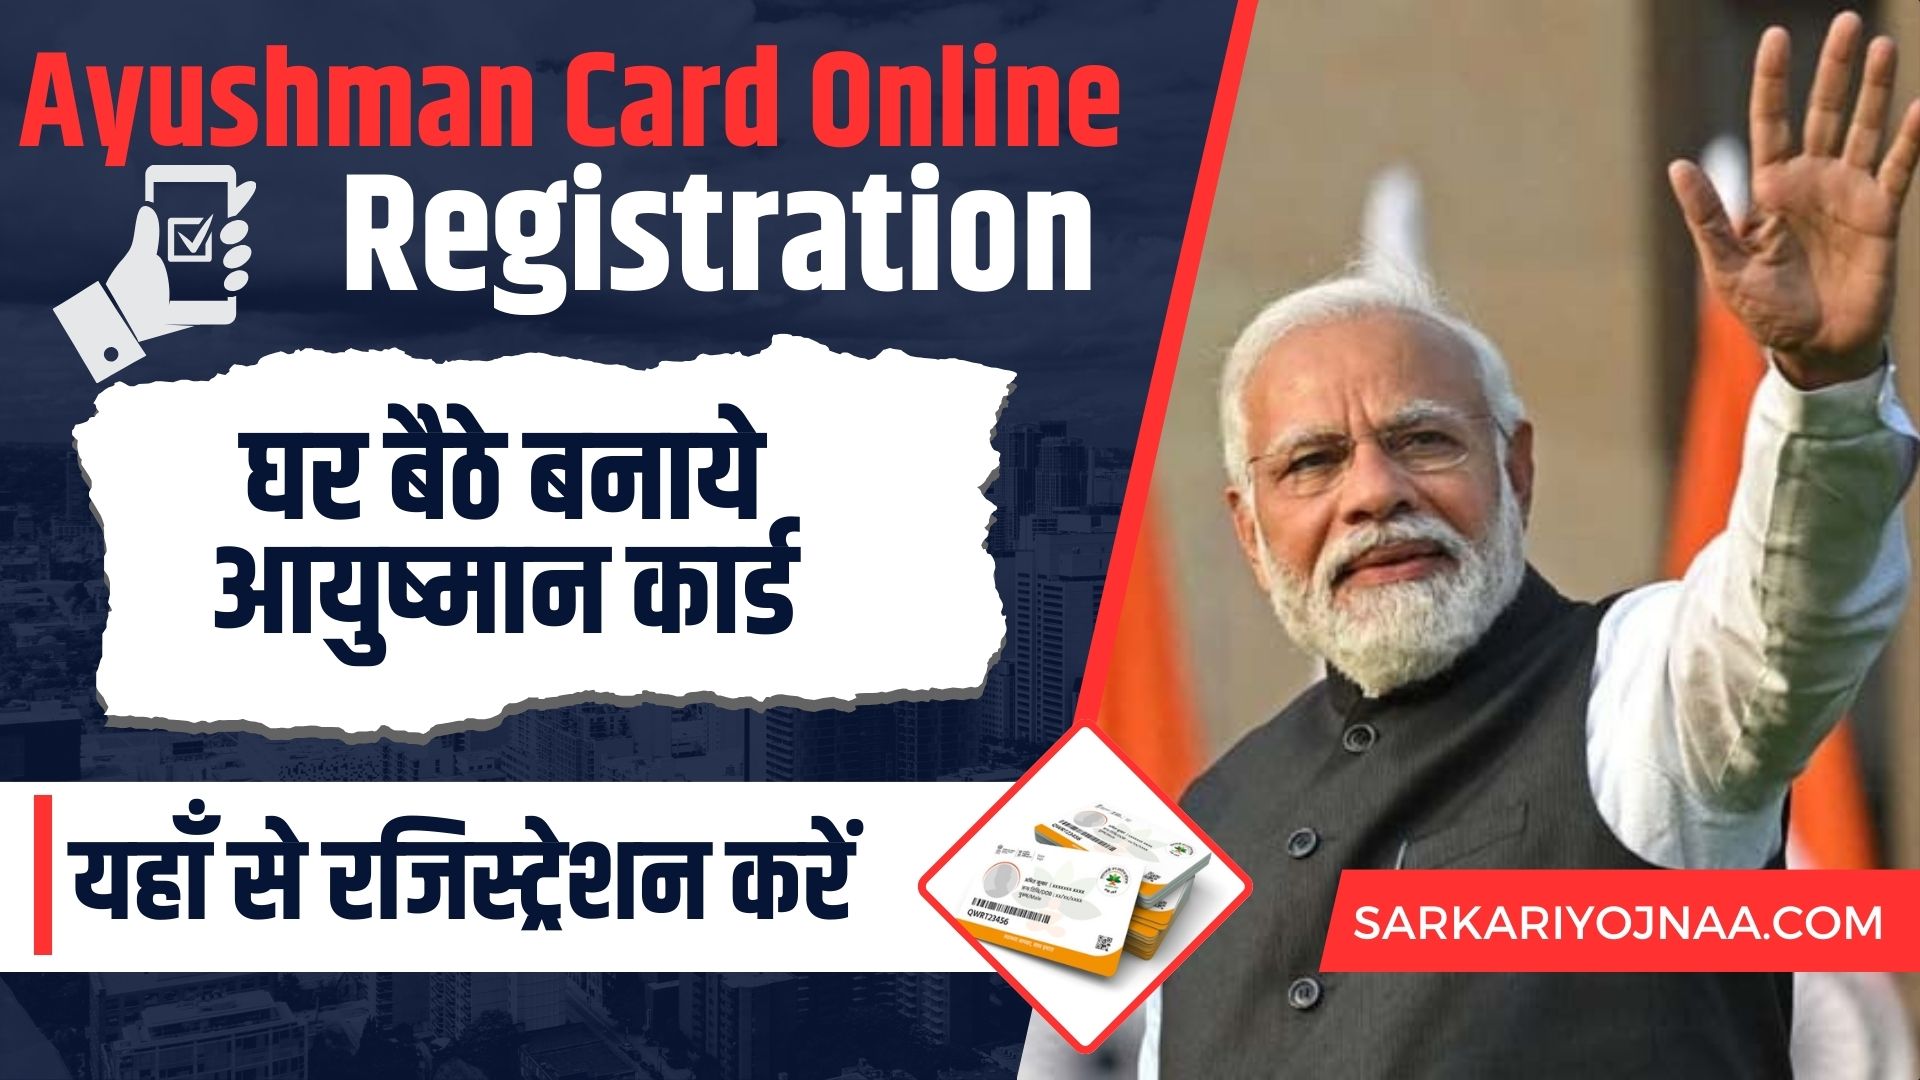 Ayushman Card Online Registration: घर बैठे बनाये आयुष्मान कार्ड, यहाँ से रजिस्ट्रेशन करें